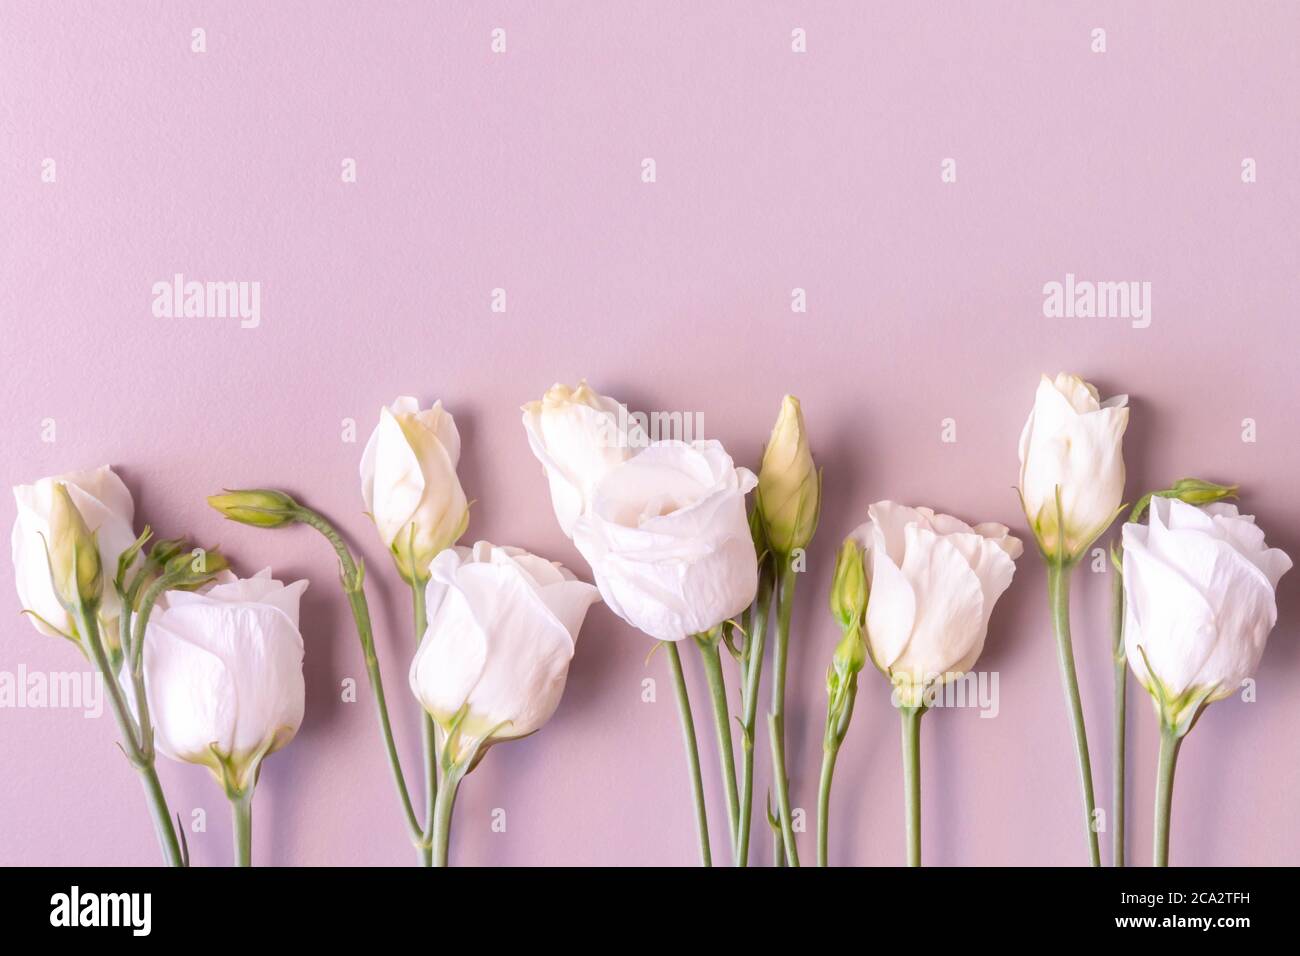 Fila de rosas blancas sobre fondo rosa. Flores de color rosa blanca con  tallos y hojas. En fila. Rosas cremosas aisladas sobre fondo rosa. Espacio  de copia. Plana la Fotografía de stock -